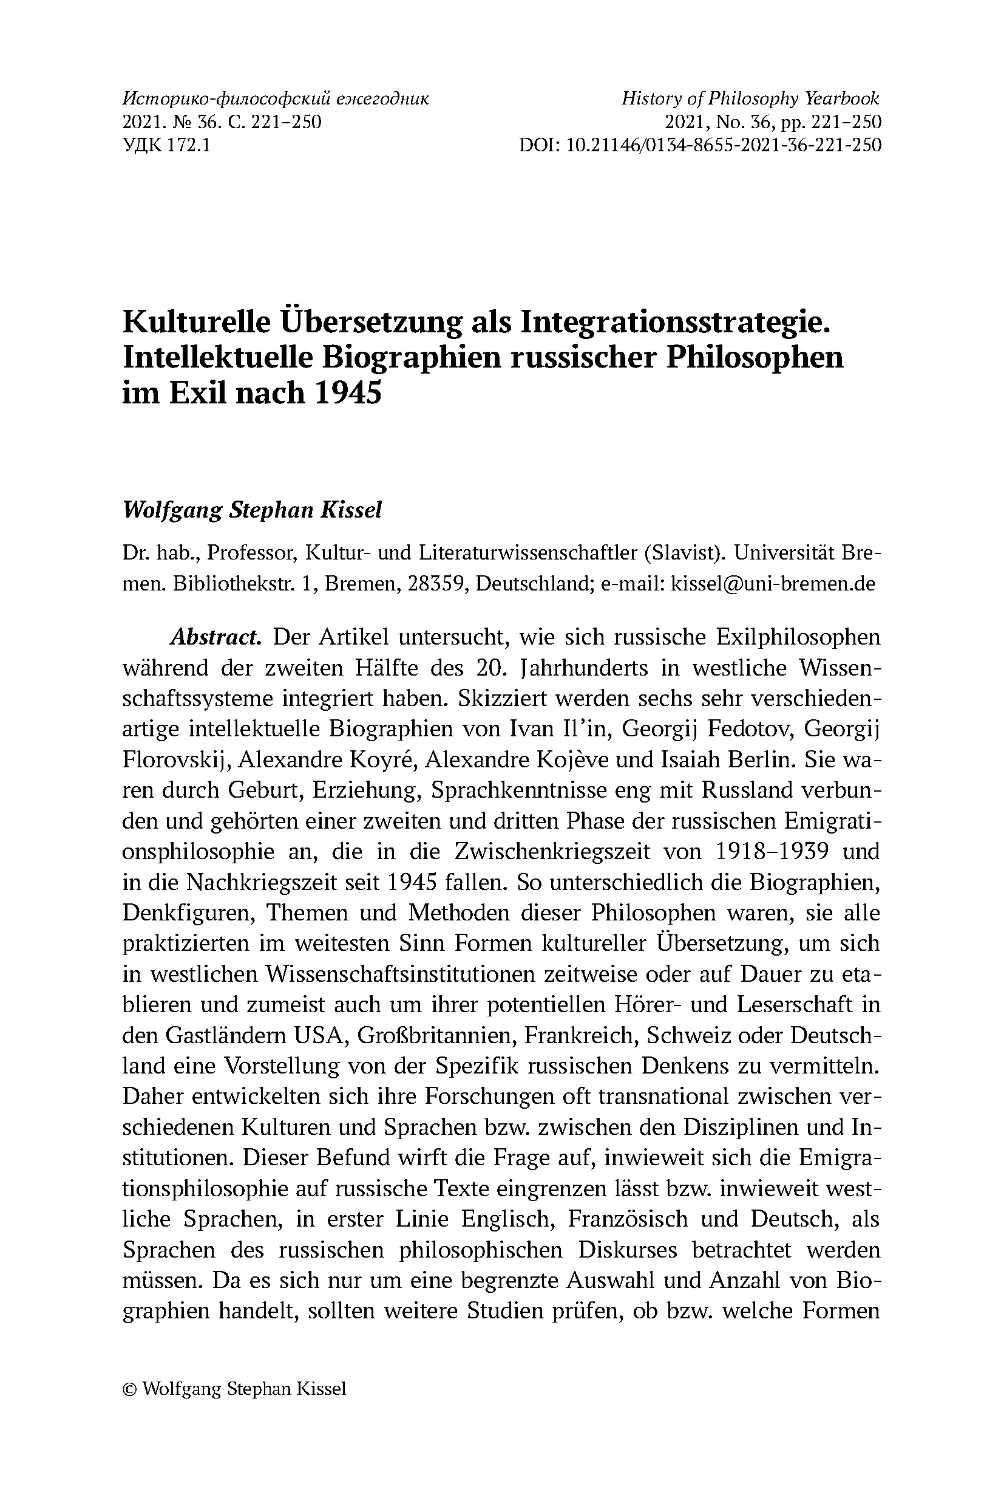 Kulturelle Übersetzung als Integrationsstrategie. Intellektuelle Biographien russischer Philosophen im Exil nach 1945